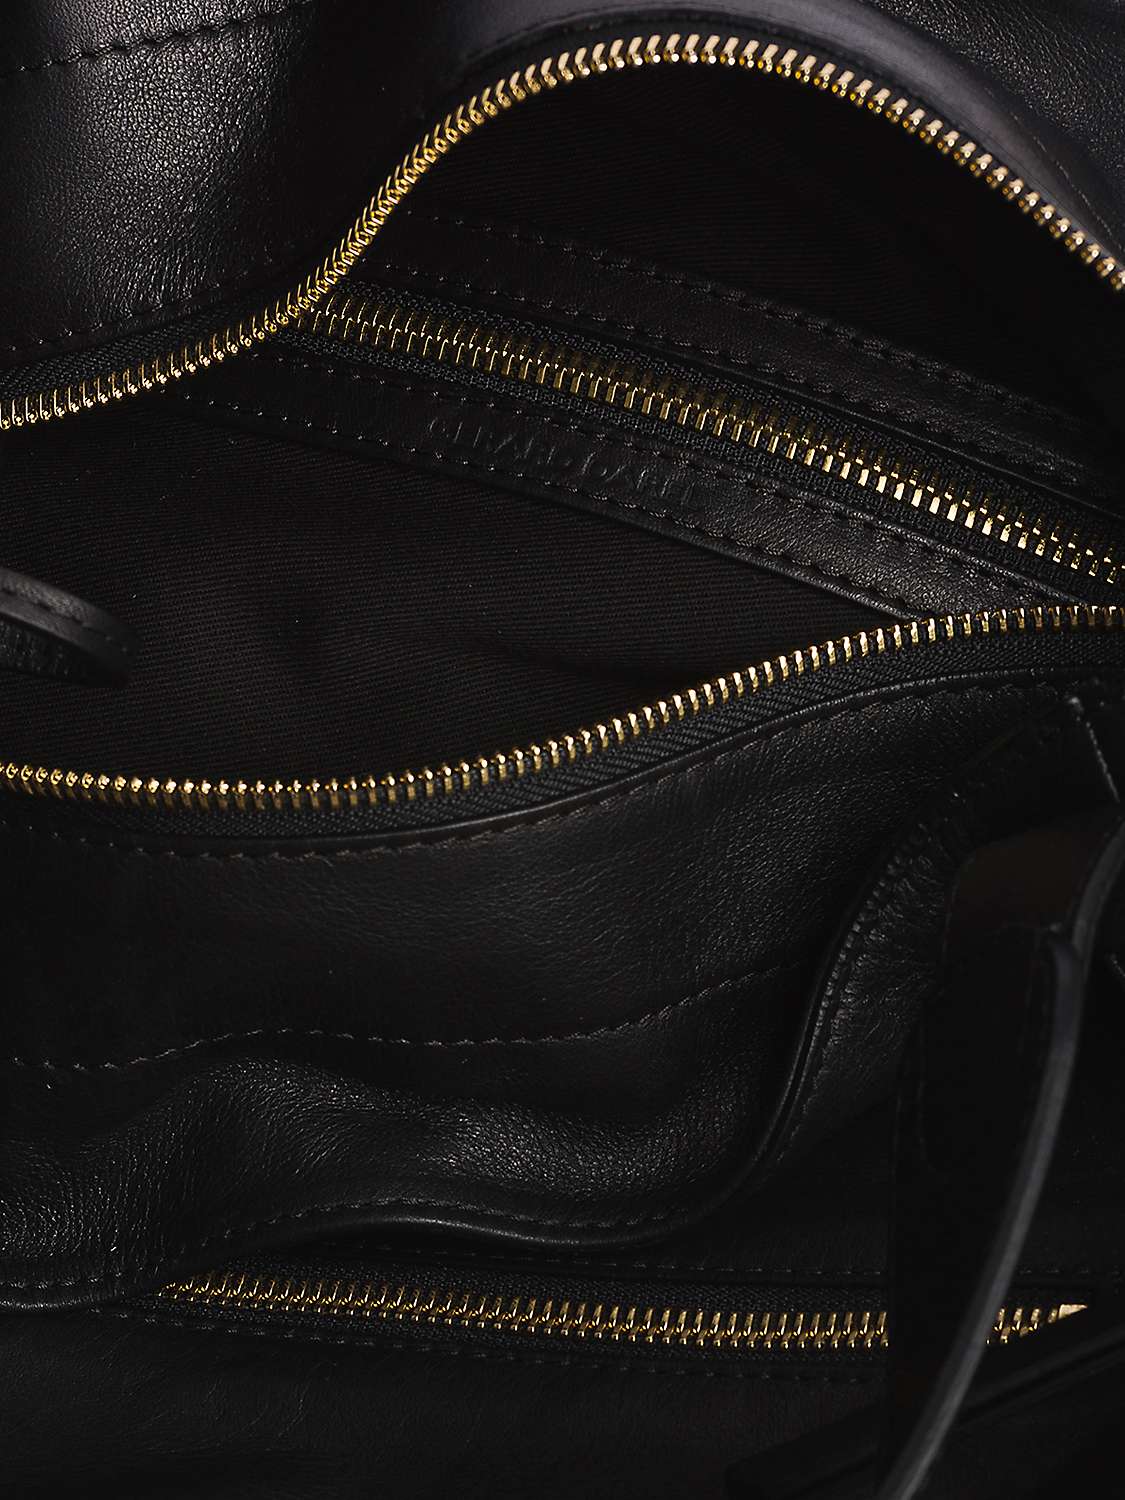 Buy Gerard Darel Rebelle Calfskin Leather Bag, Black Online at johnlewis.com